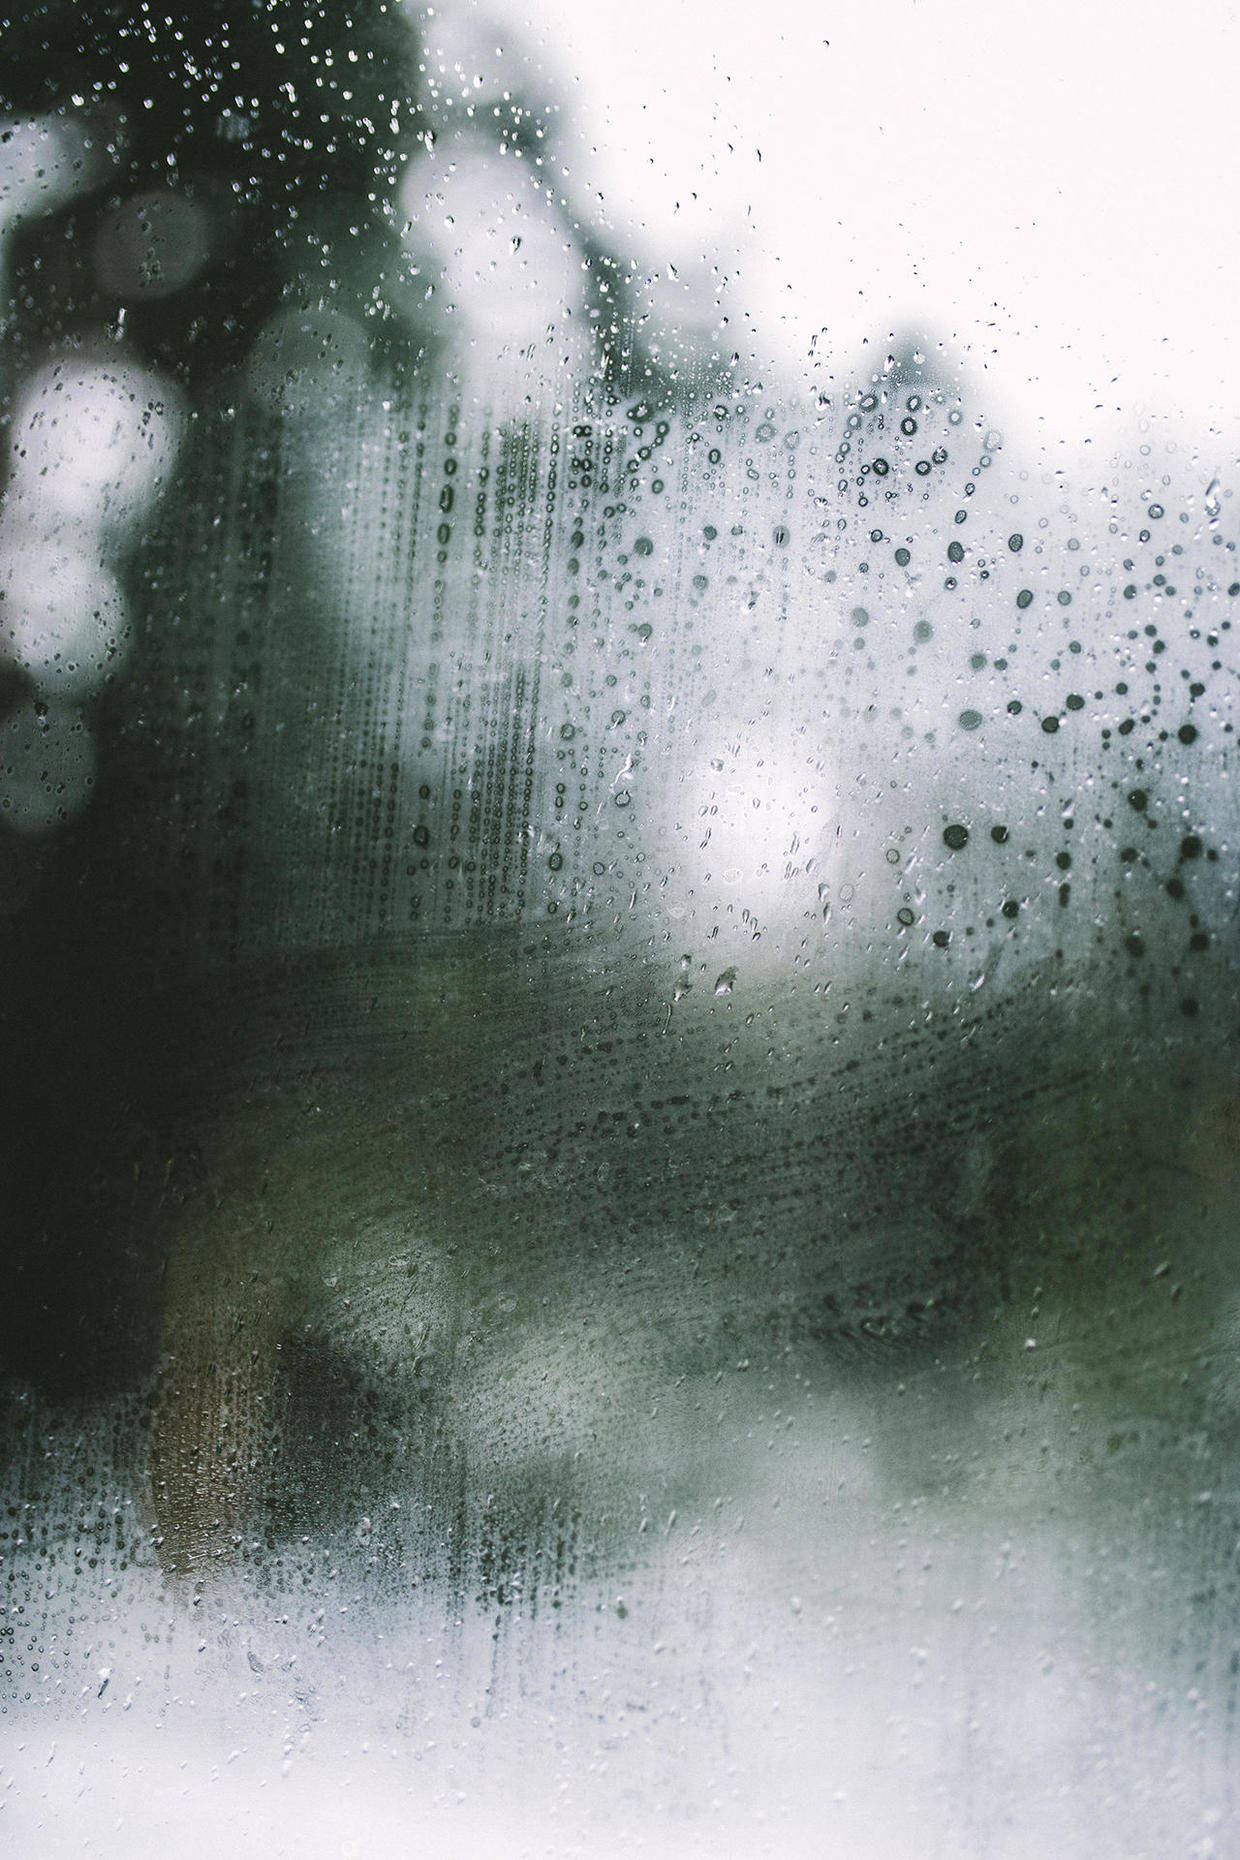 我个人是不太喜欢下雨天的,总感觉心情会莫名低落或者思绪太多,好像